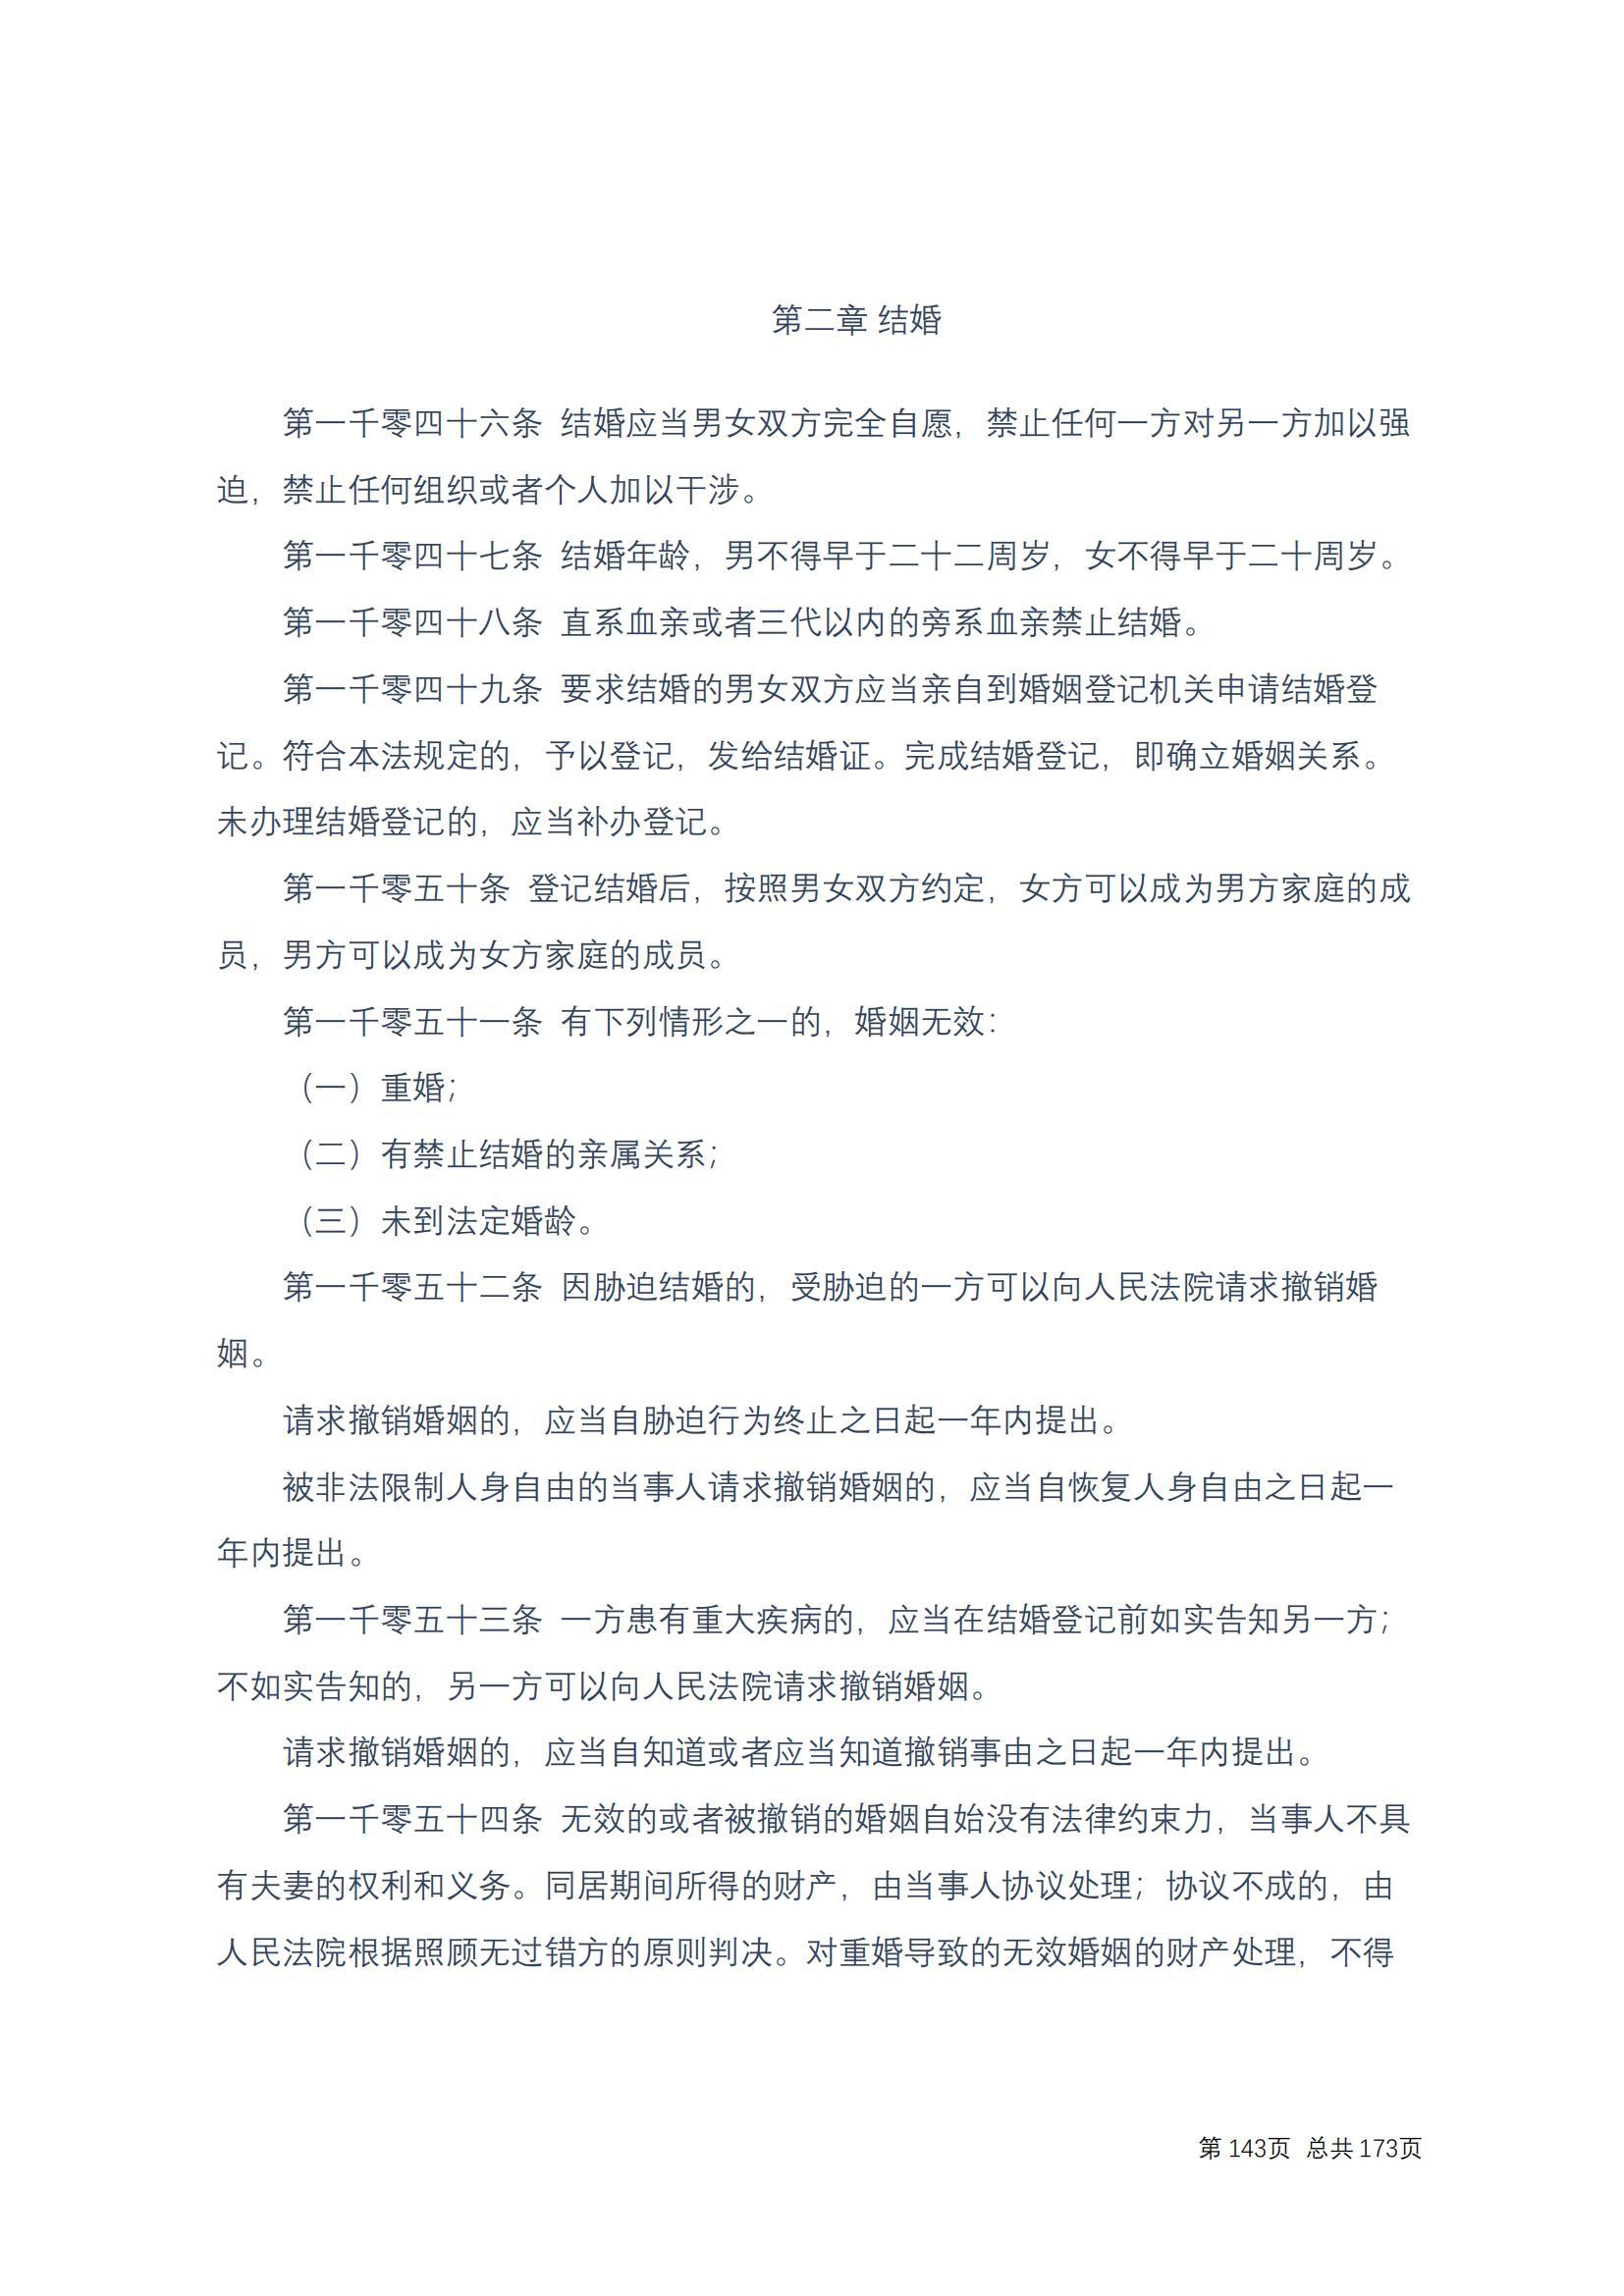 中华人民共和国民法典 修改过_142